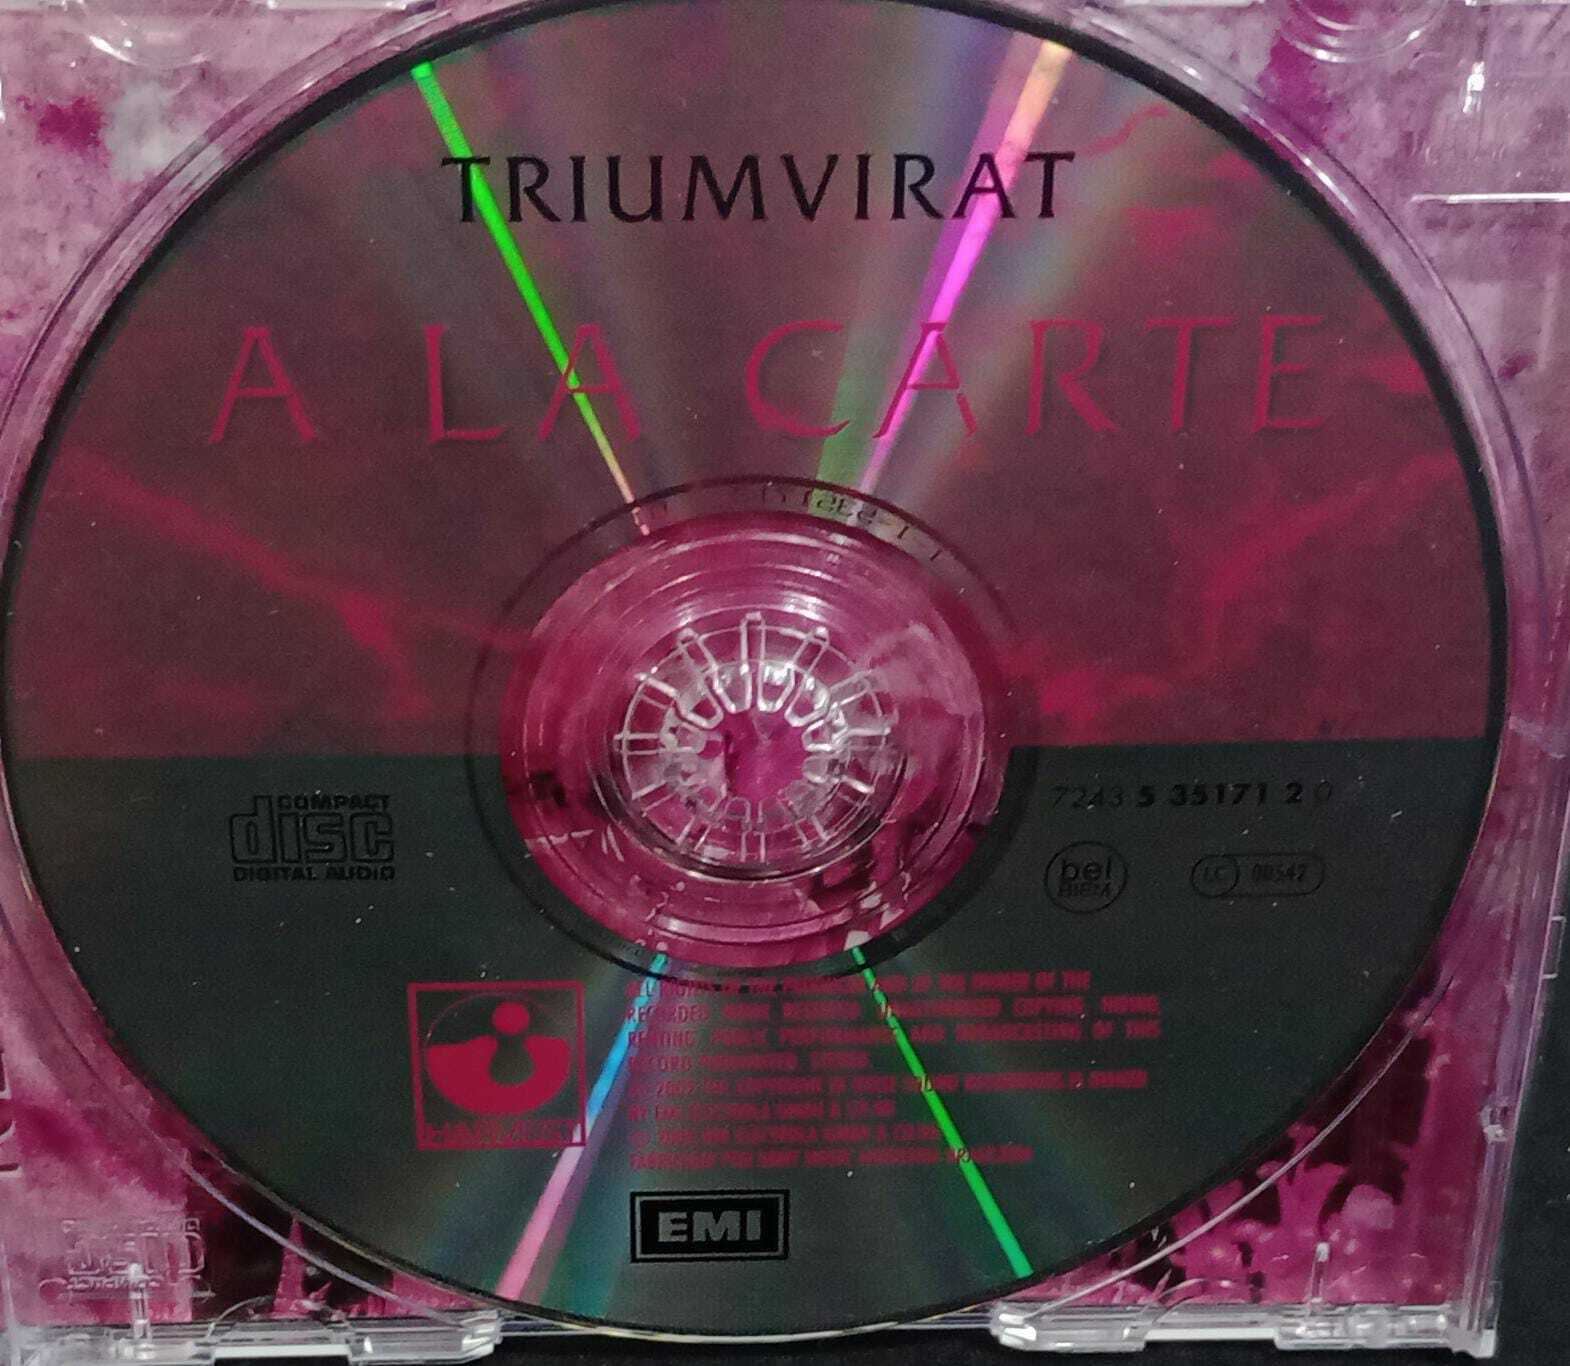 CD - Triumvirat - A La Carte